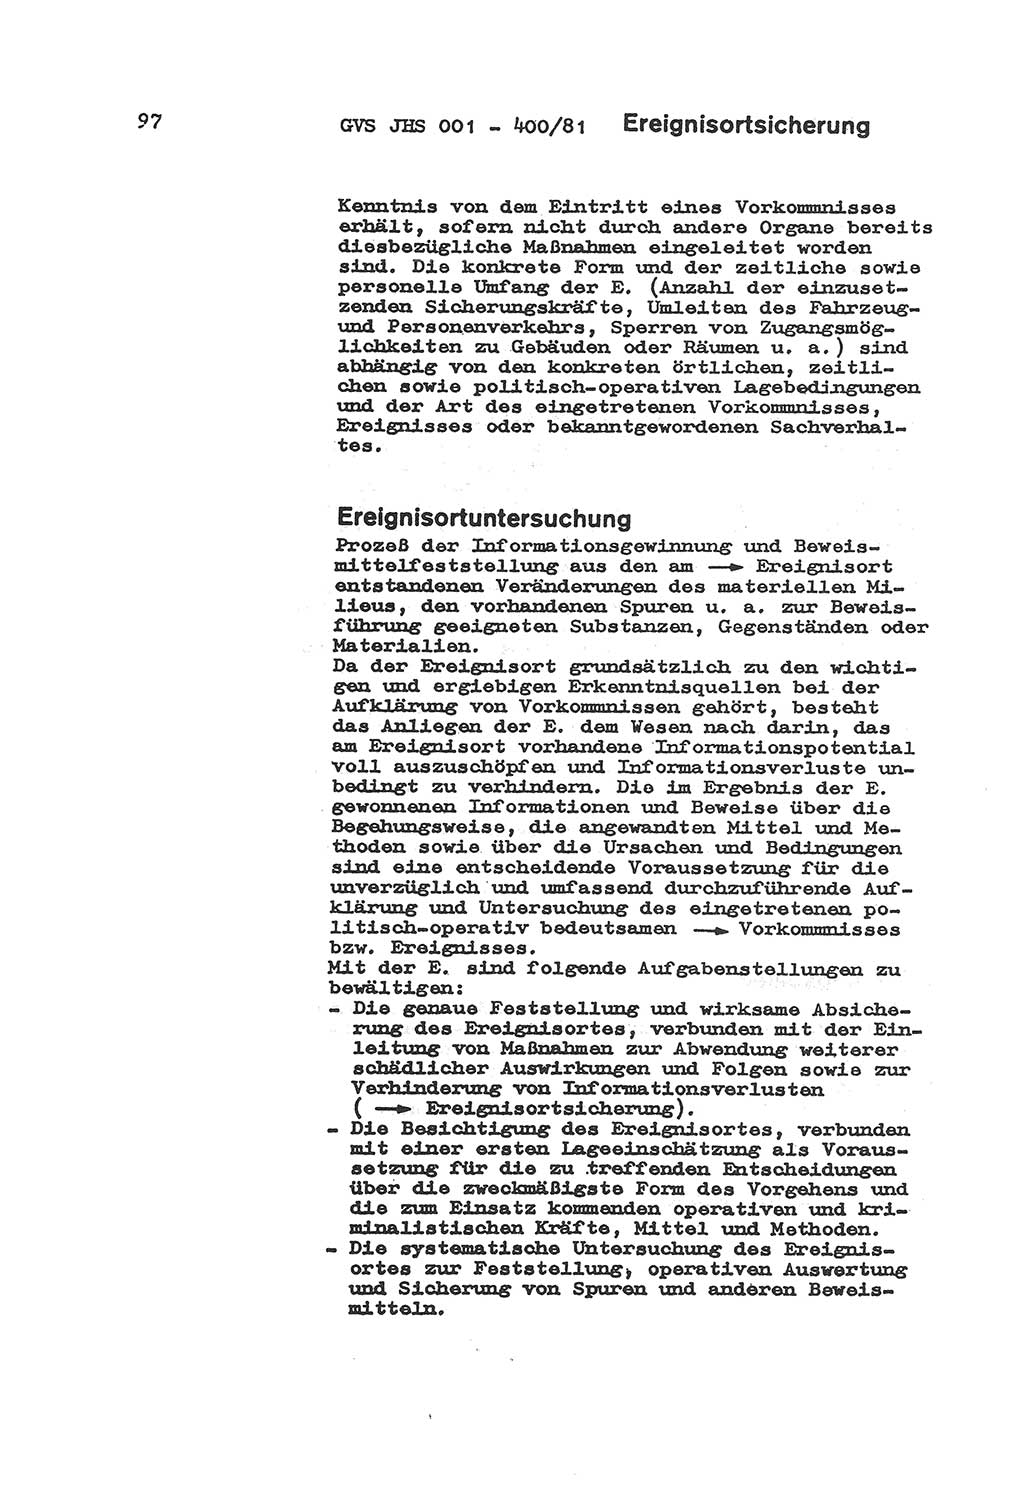 Wörterbuch der politisch-operativen Arbeit, Ministerium für Staatssicherheit (MfS) [Deutsche Demokratische Republik (DDR)], Juristische Hochschule (JHS), Geheime Verschlußsache (GVS) o001-400/81, Potsdam 1985, Blatt 97 (Wb. pol.-op. Arb. MfS DDR JHS GVS o001-400/81 1985, Bl. 97)